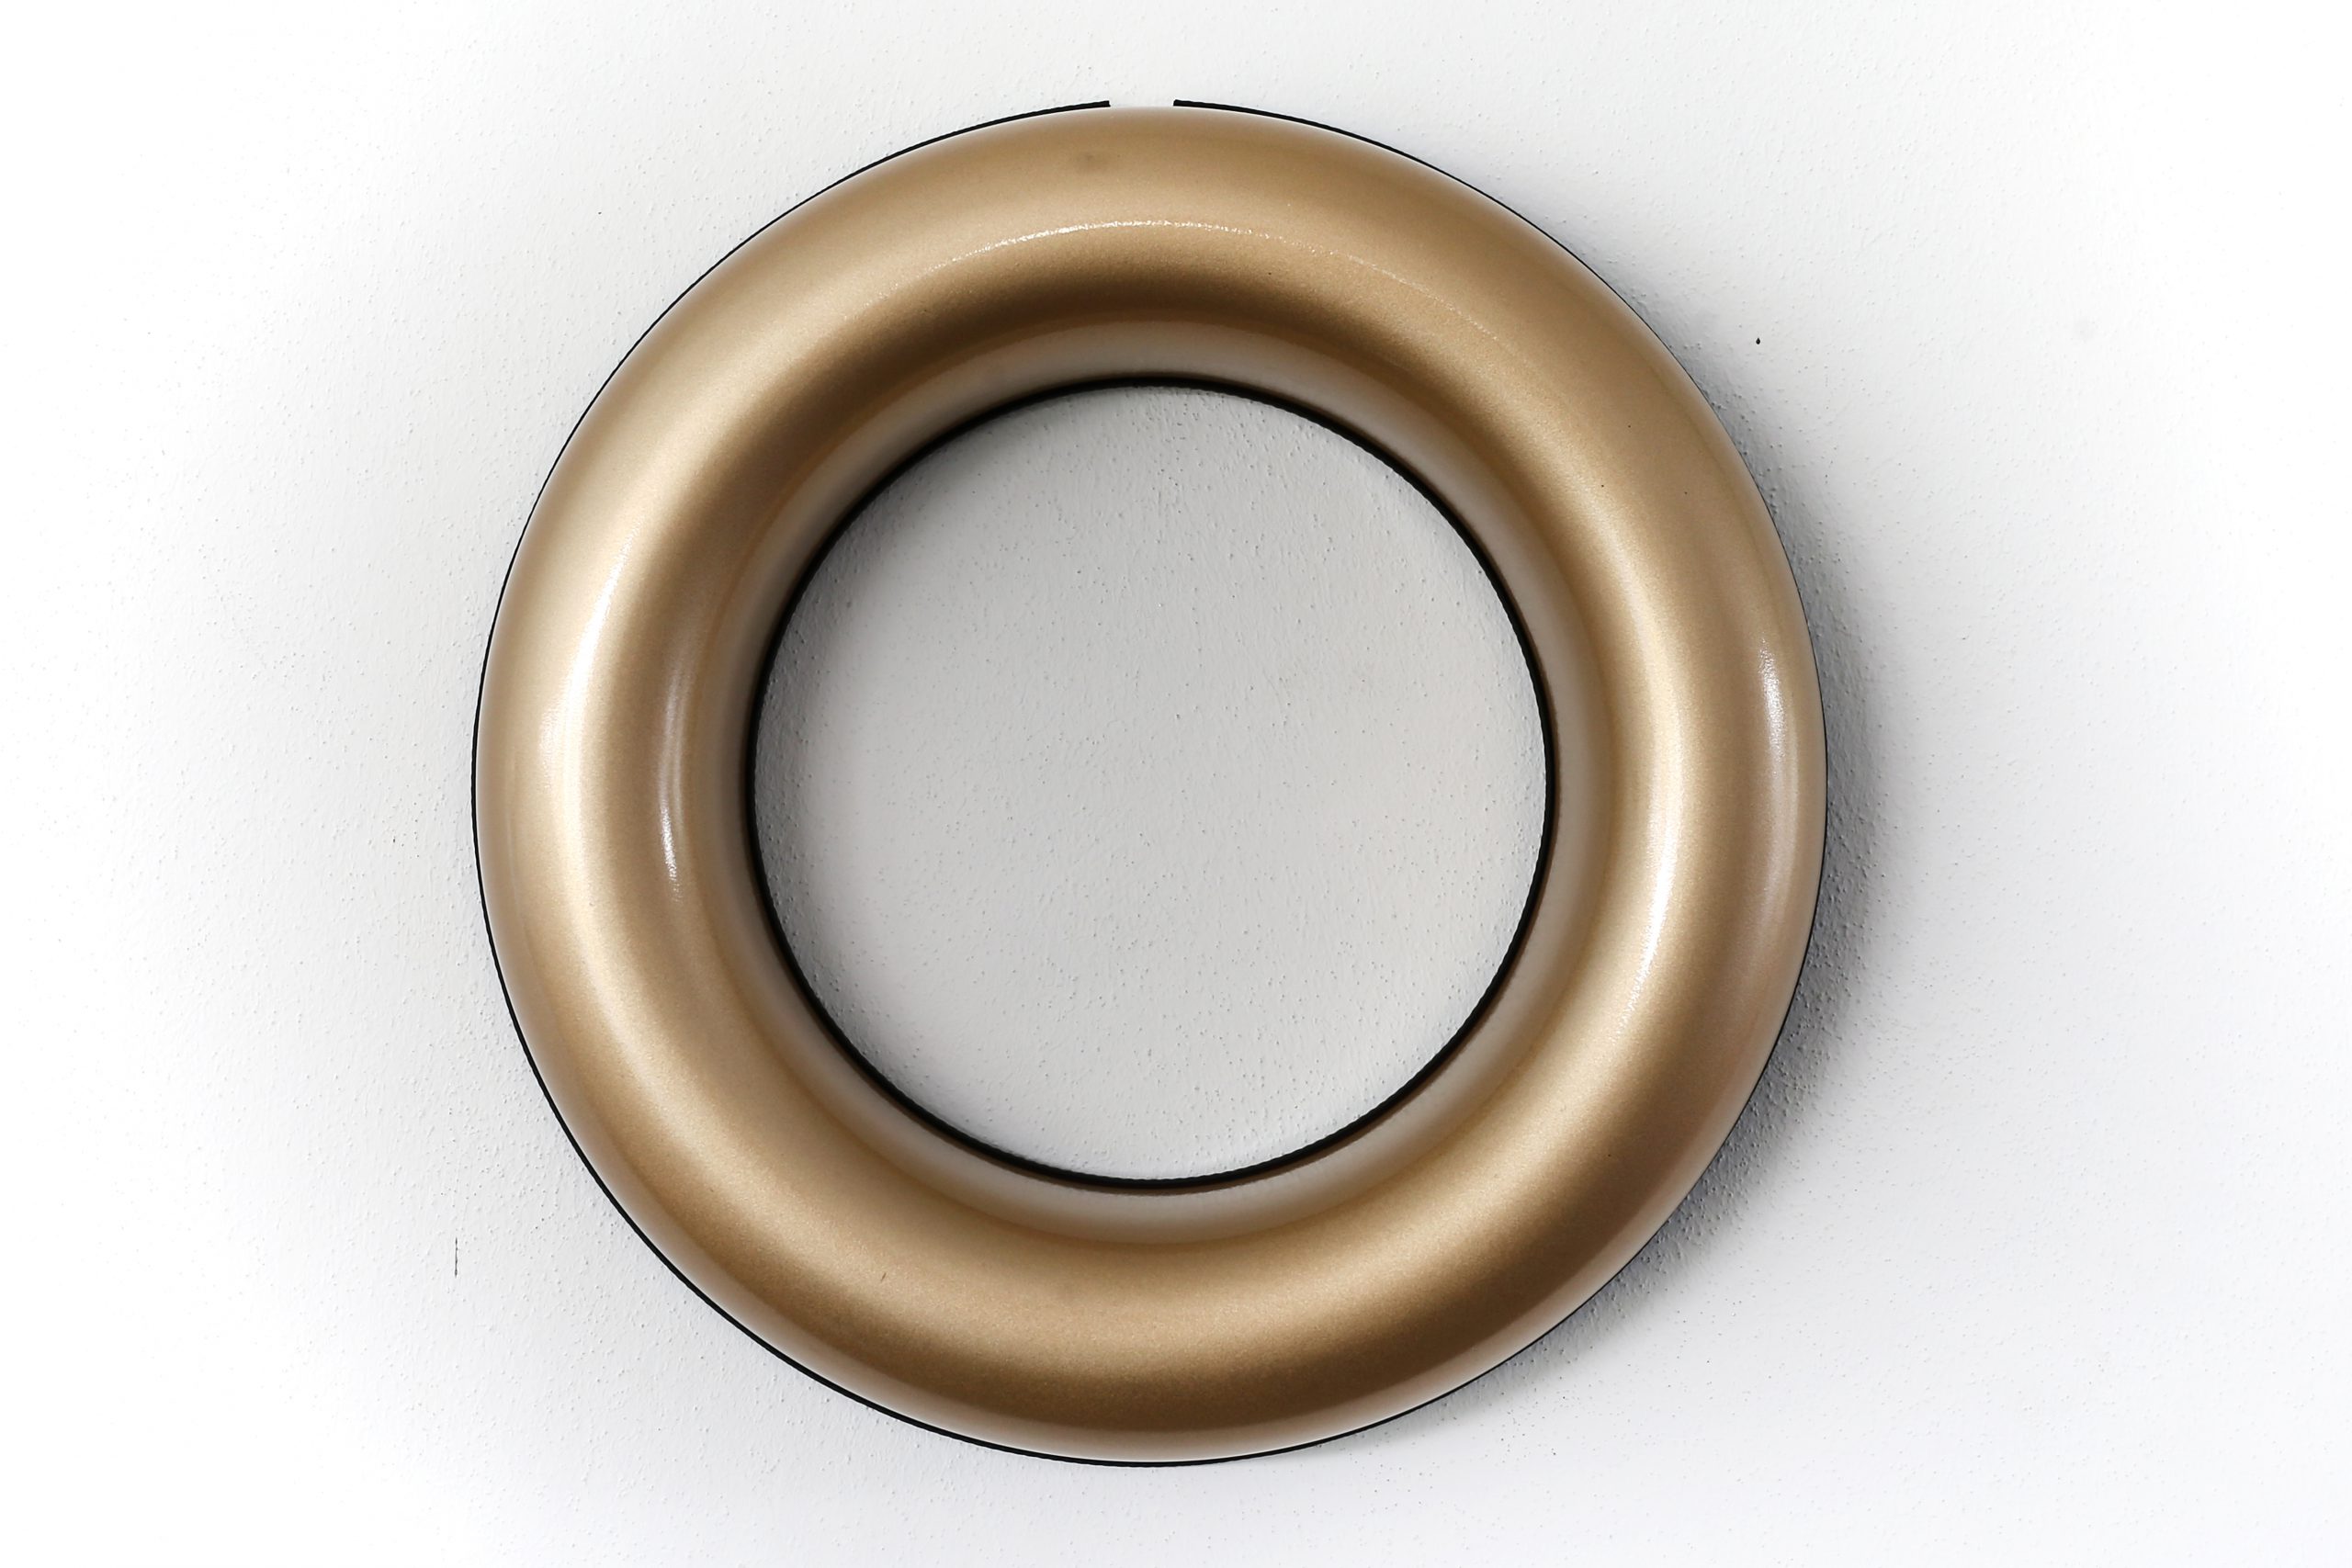 Festschmuck by Magneticas Designkranz Gold lackiert, Durchmesser 40 cm (1-tlg.)